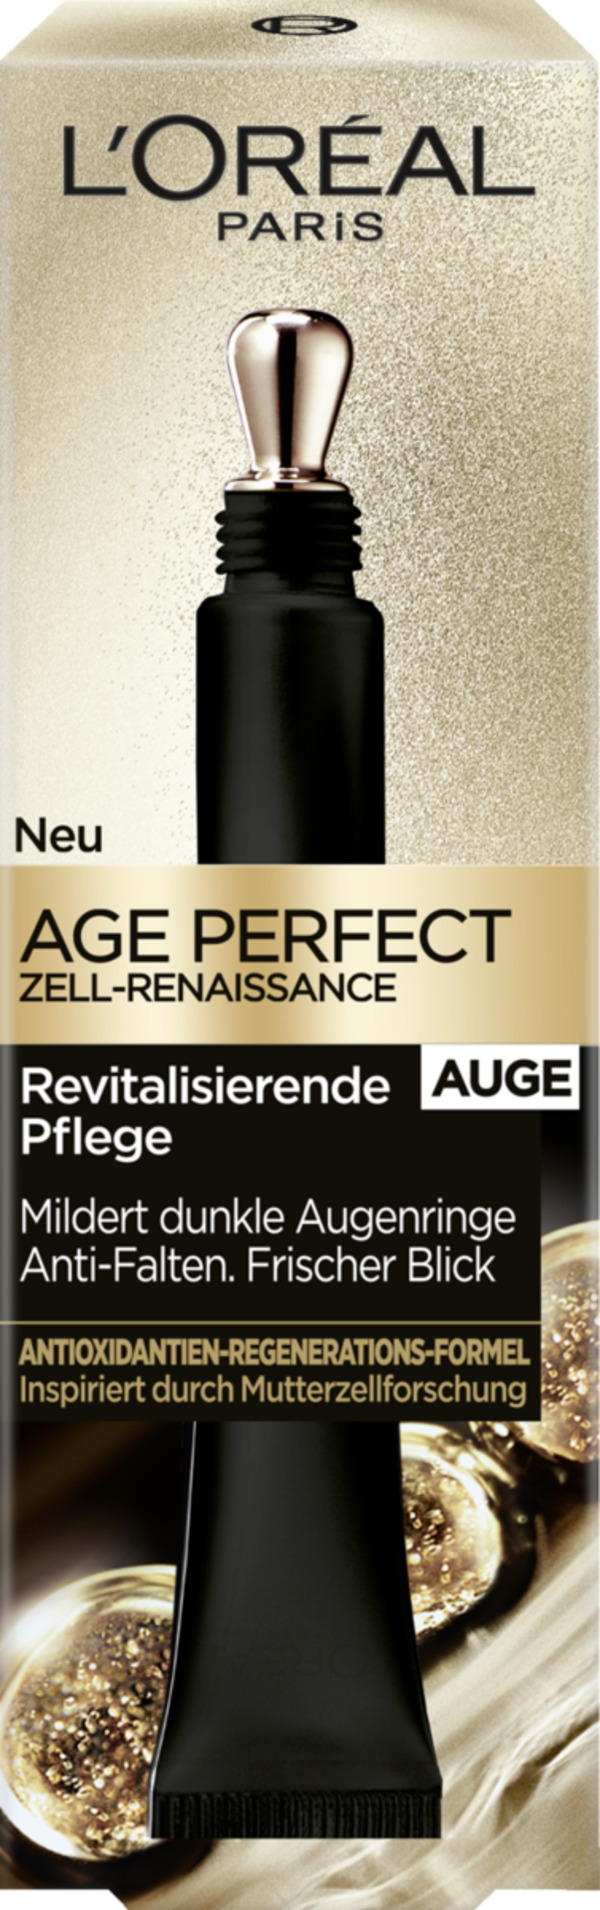 Bild 1 von L’Oréal Paris Age Perfect Zell-Renaissance Regenerie 113.00 EUR/100 ml